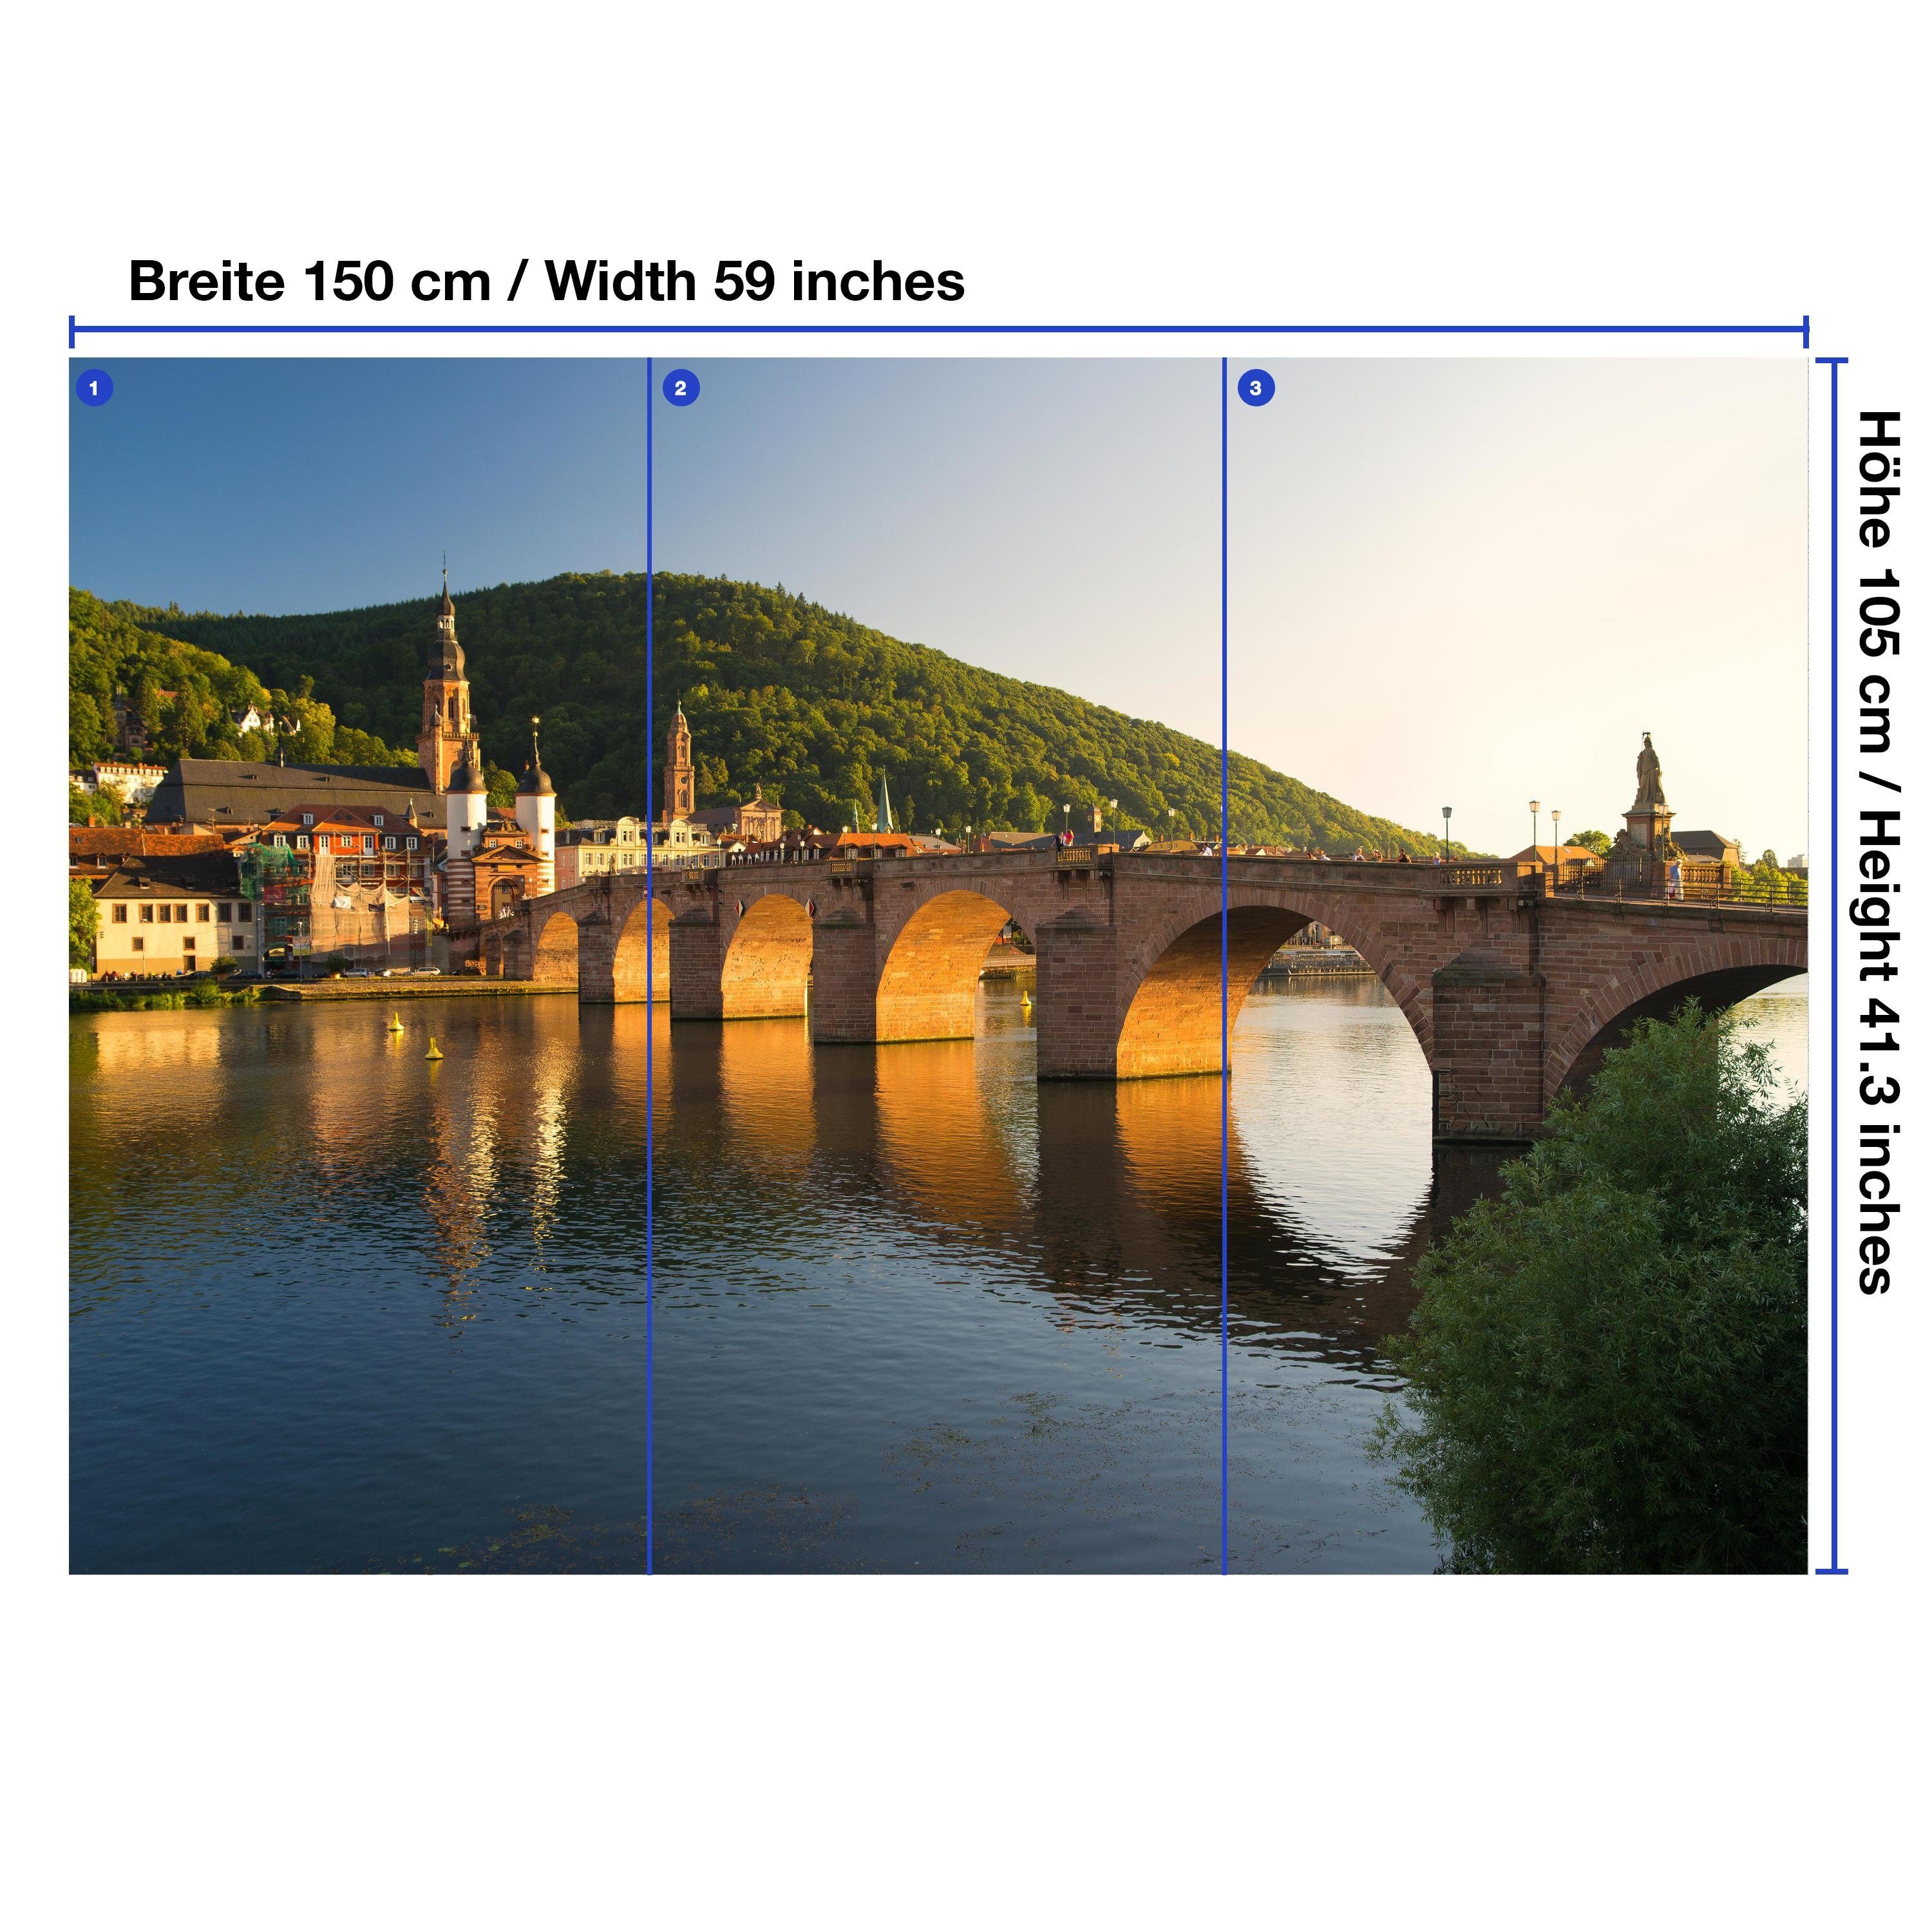 wandmotiv24 matt, Wandtapete, glatt, Alte Brücke Heidelberg, Vliestapete Fototapete Motivtapete,